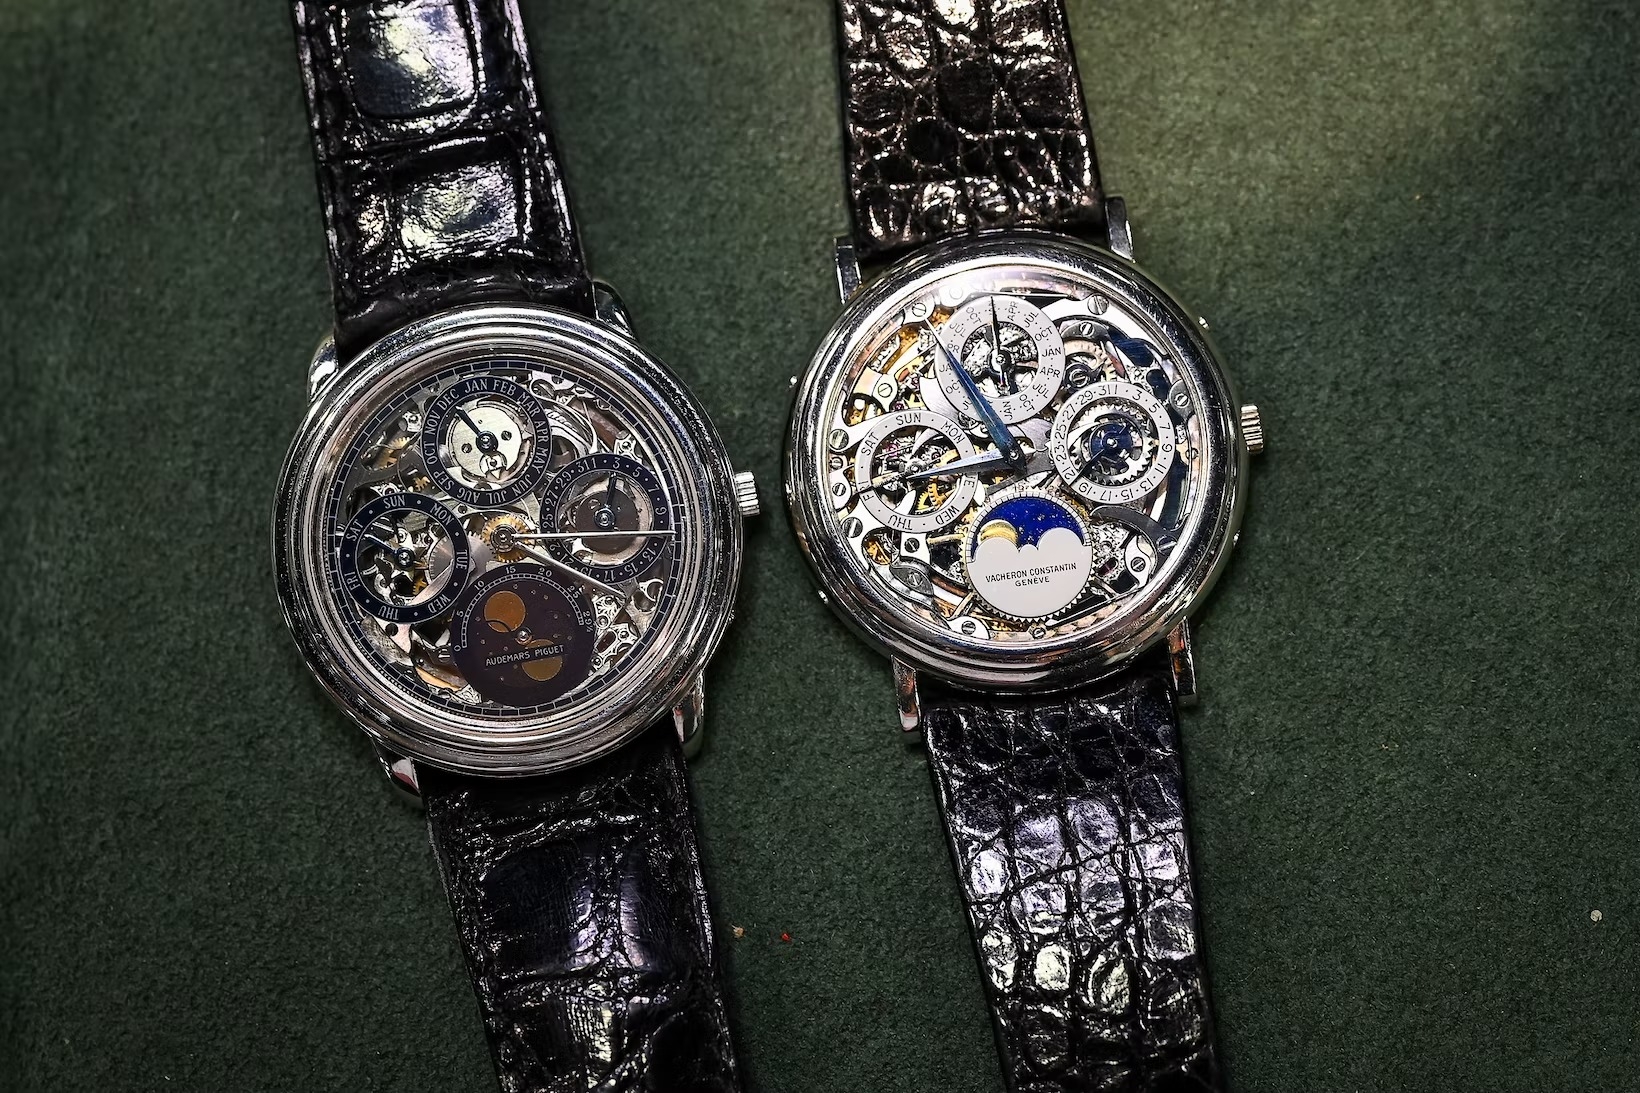 Tuyệt Chiêu “Chạy” Siêu Chính Xác Của Đồng Hồ Rolex: Superlative Chronometer Máy